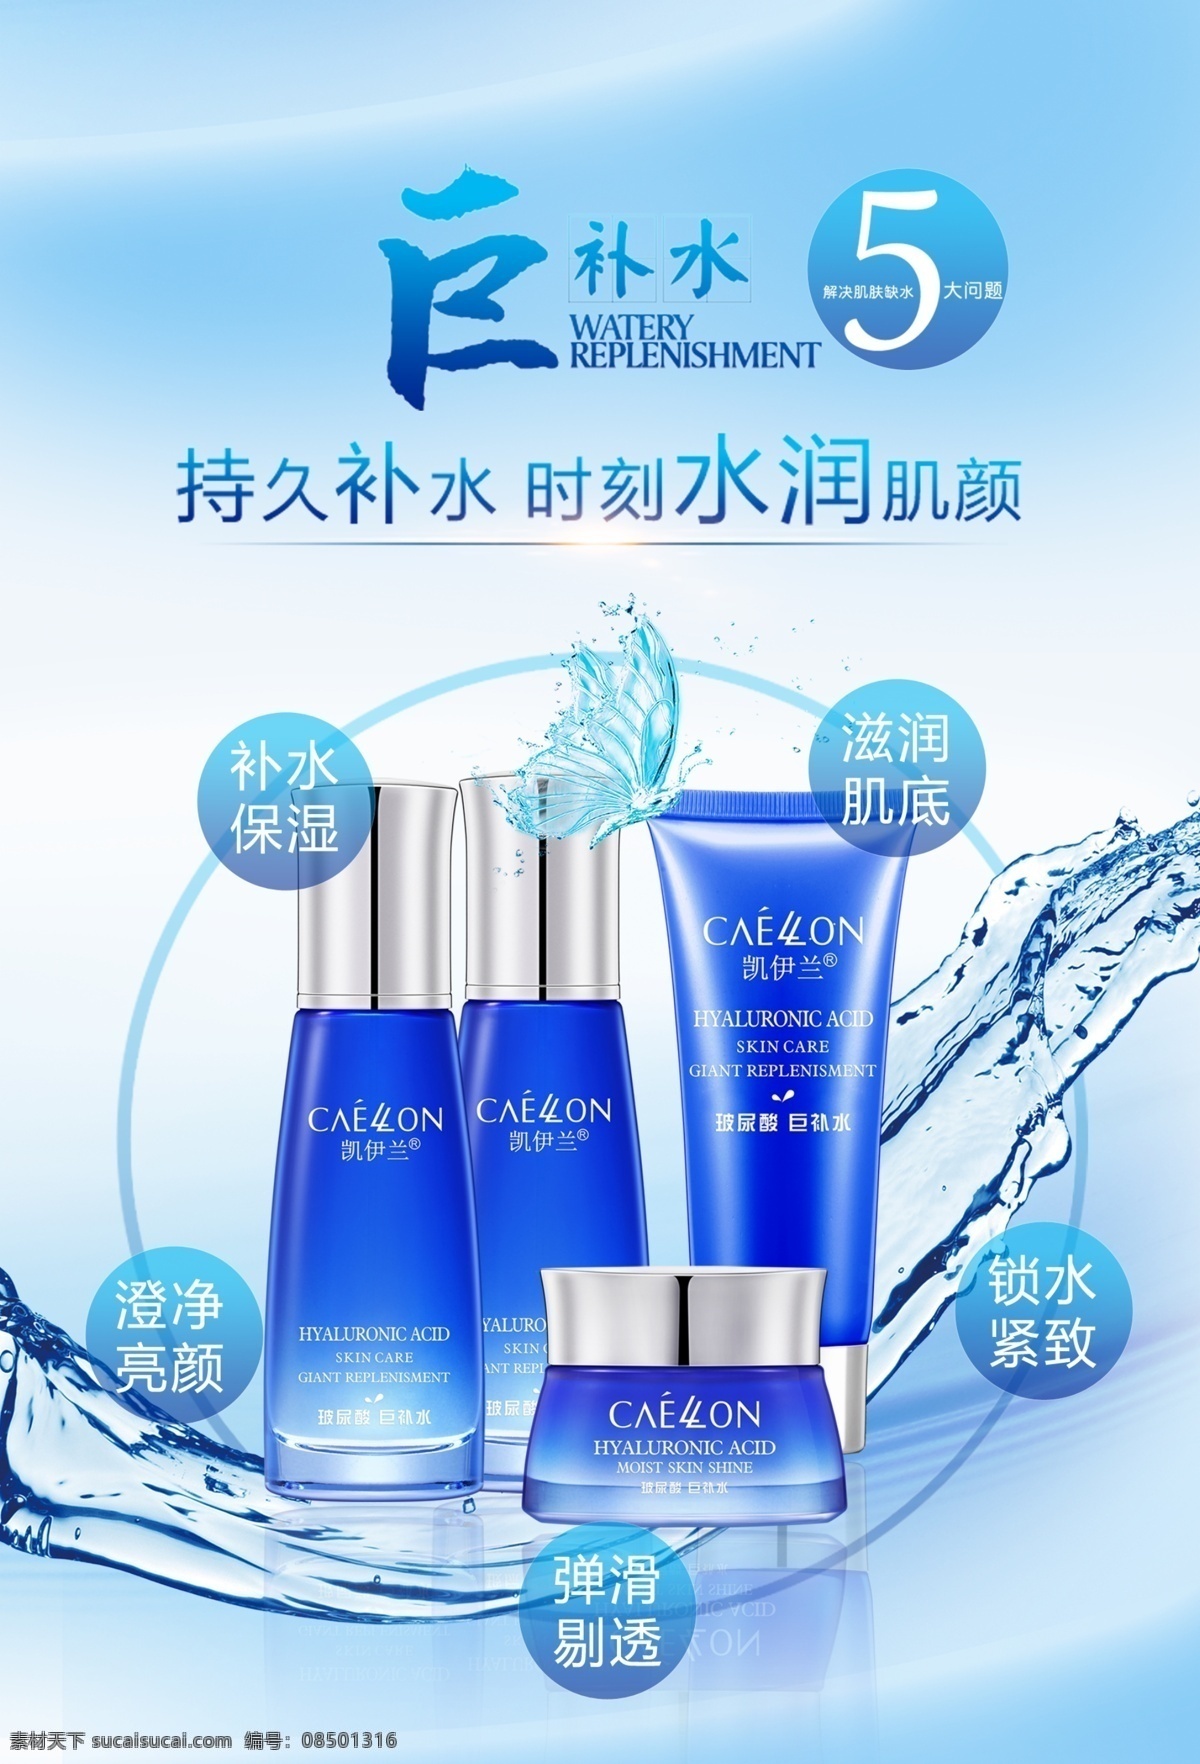 护肤品广告 蓝色背景 蓝色瓶子 化妆品套装 水背景 广告印刷类 分层